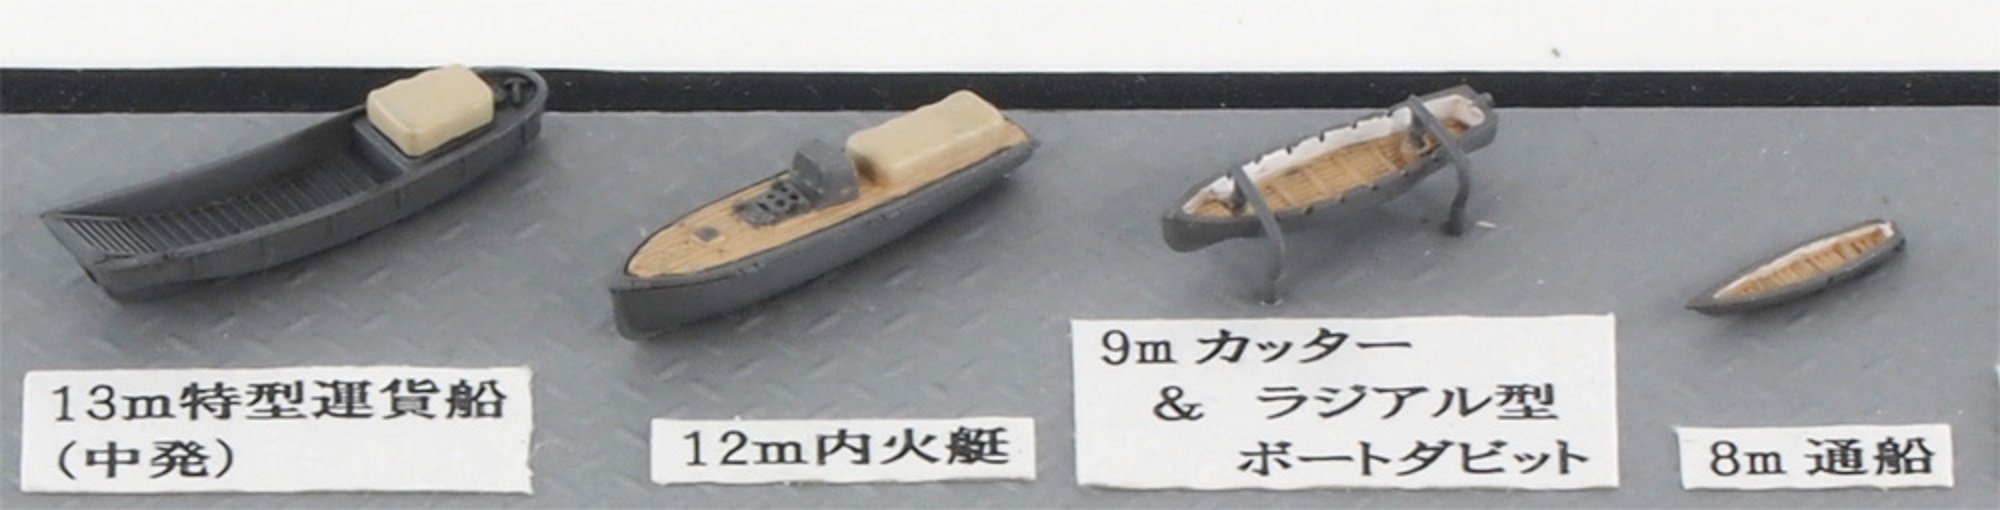 PIT-ROAD Skywave Ne-06 Ausrüstung für 6 Schiffe der japanischen Marine im Maßstab 1:700 aus dem Zweiten Weltkrieg